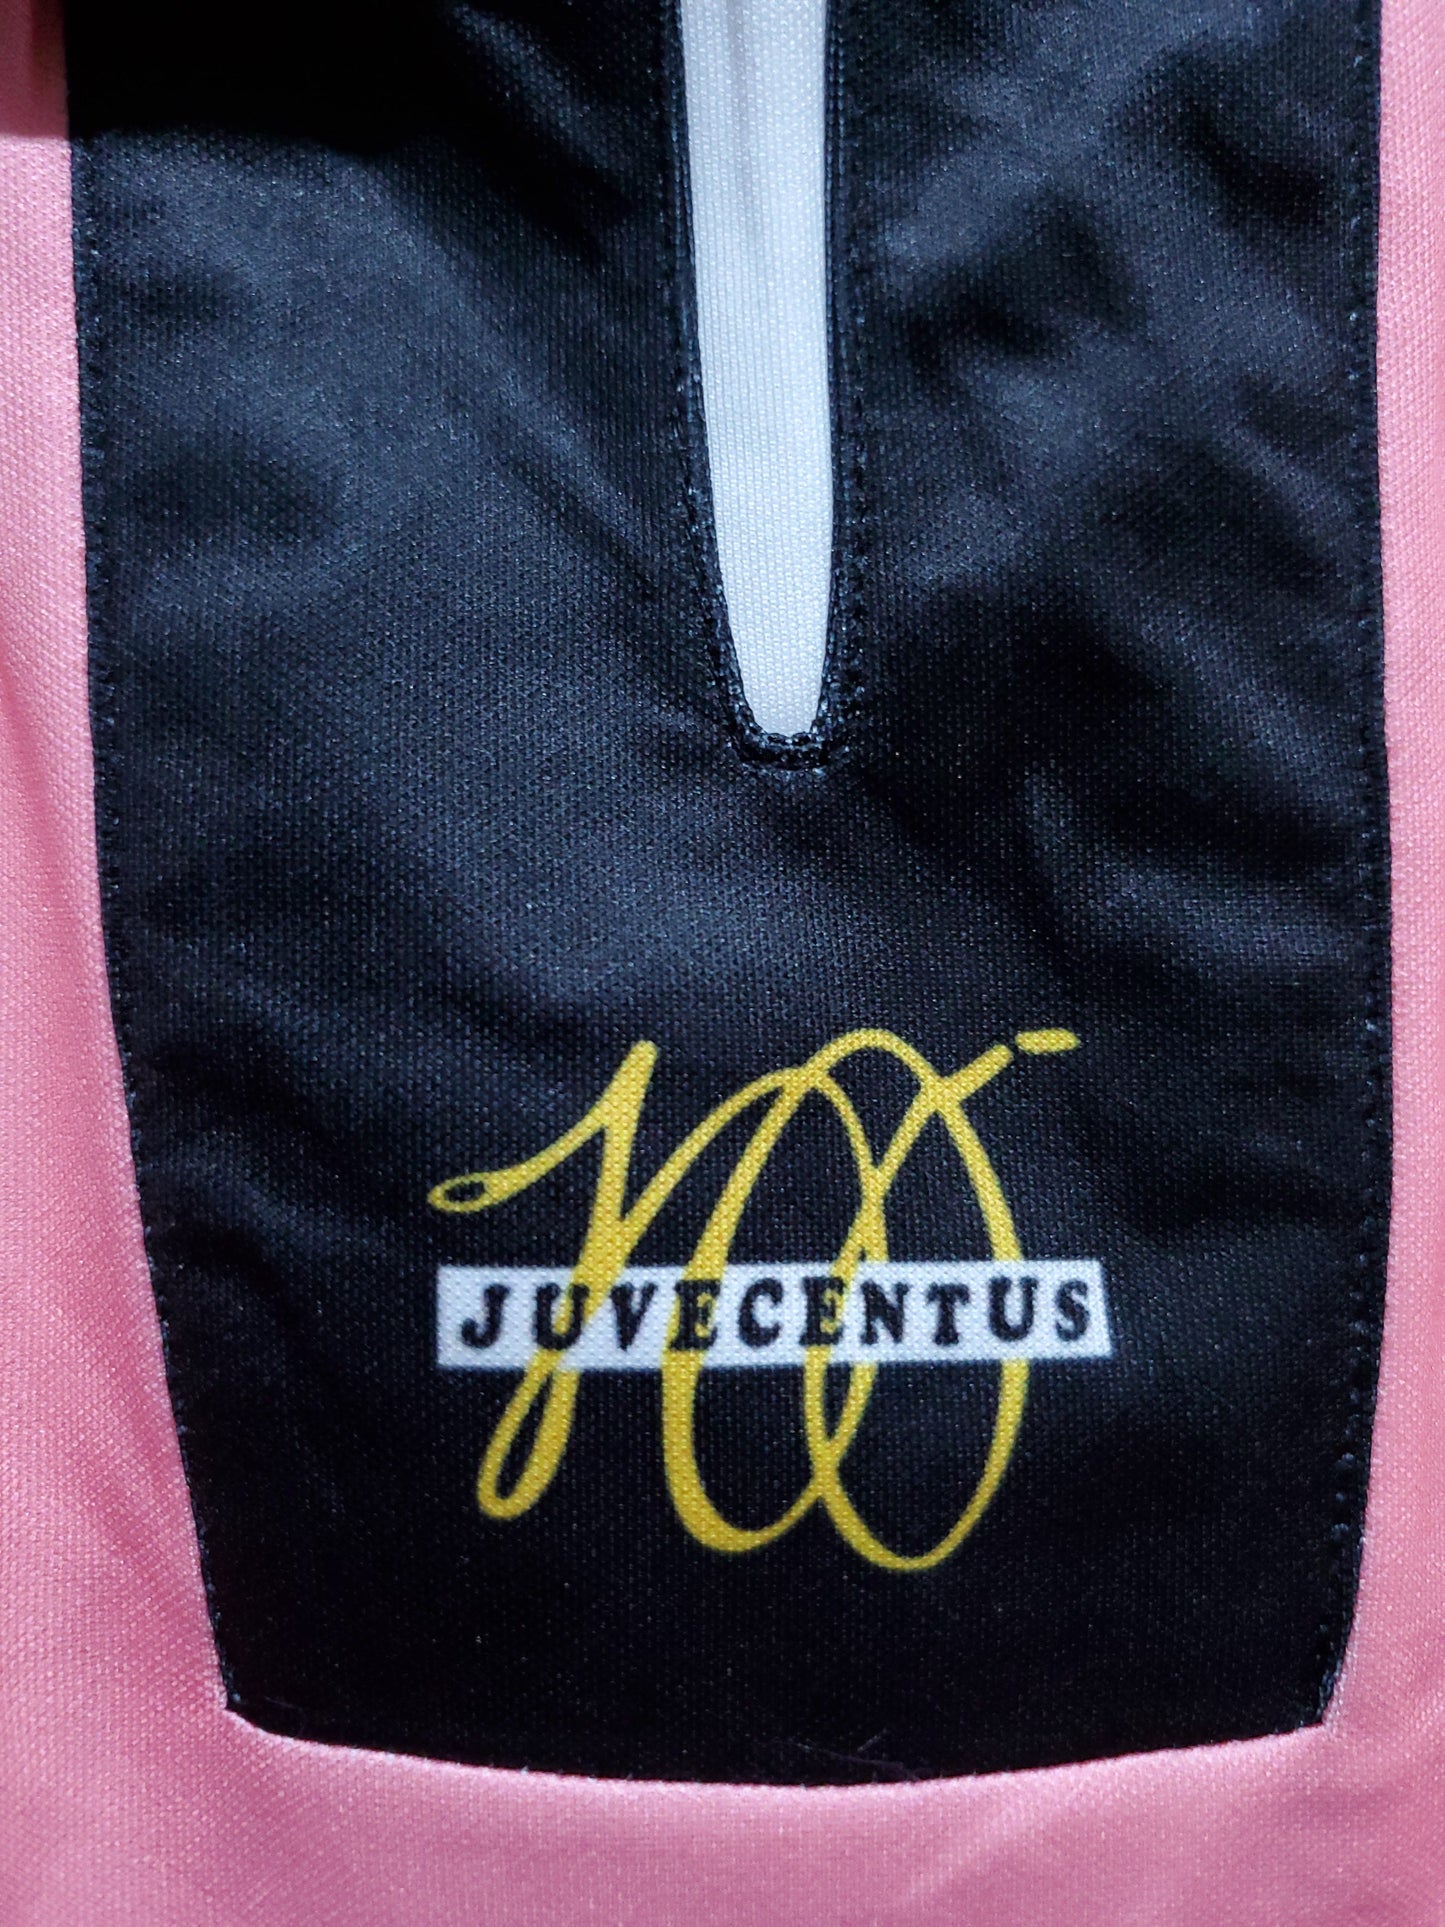 Retro Juventus 98/99 Away Kit